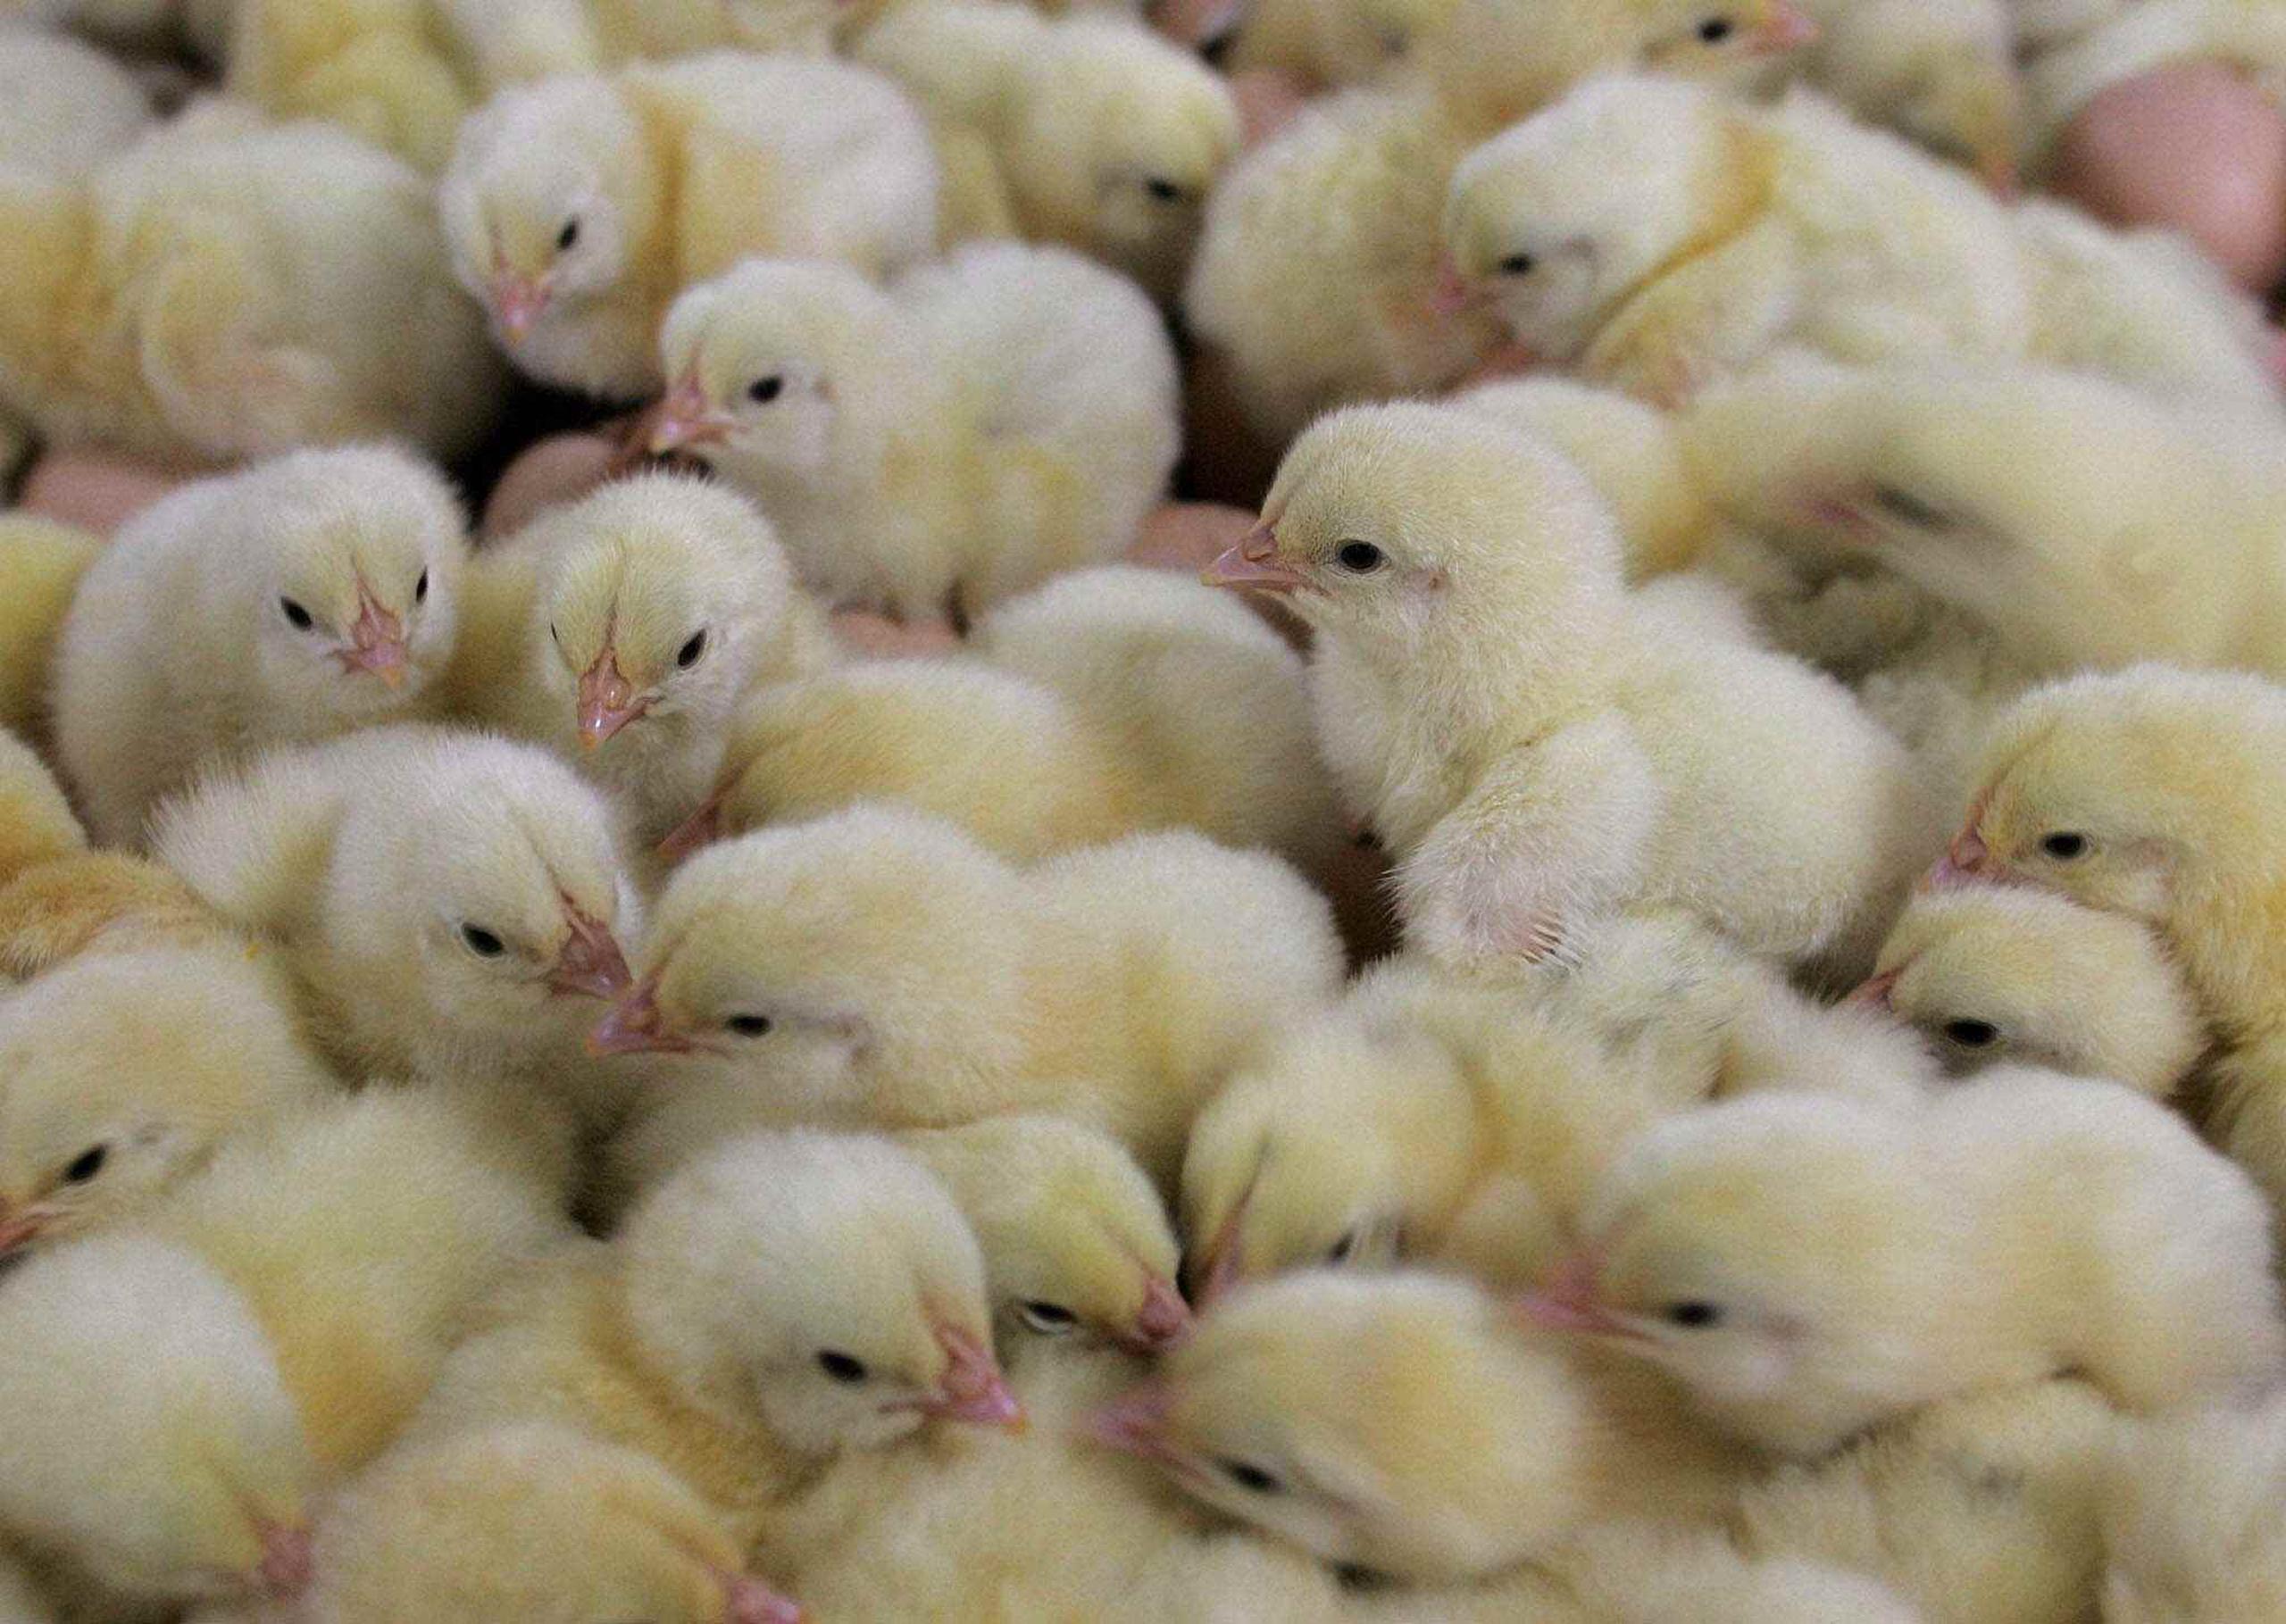 Uno de los tres canes que fueron sometidos a examen en diciembre en una granja de patos del país dio positivo de la cepa altamente patógena H5N8 de la gripe aviar. (Archivo)